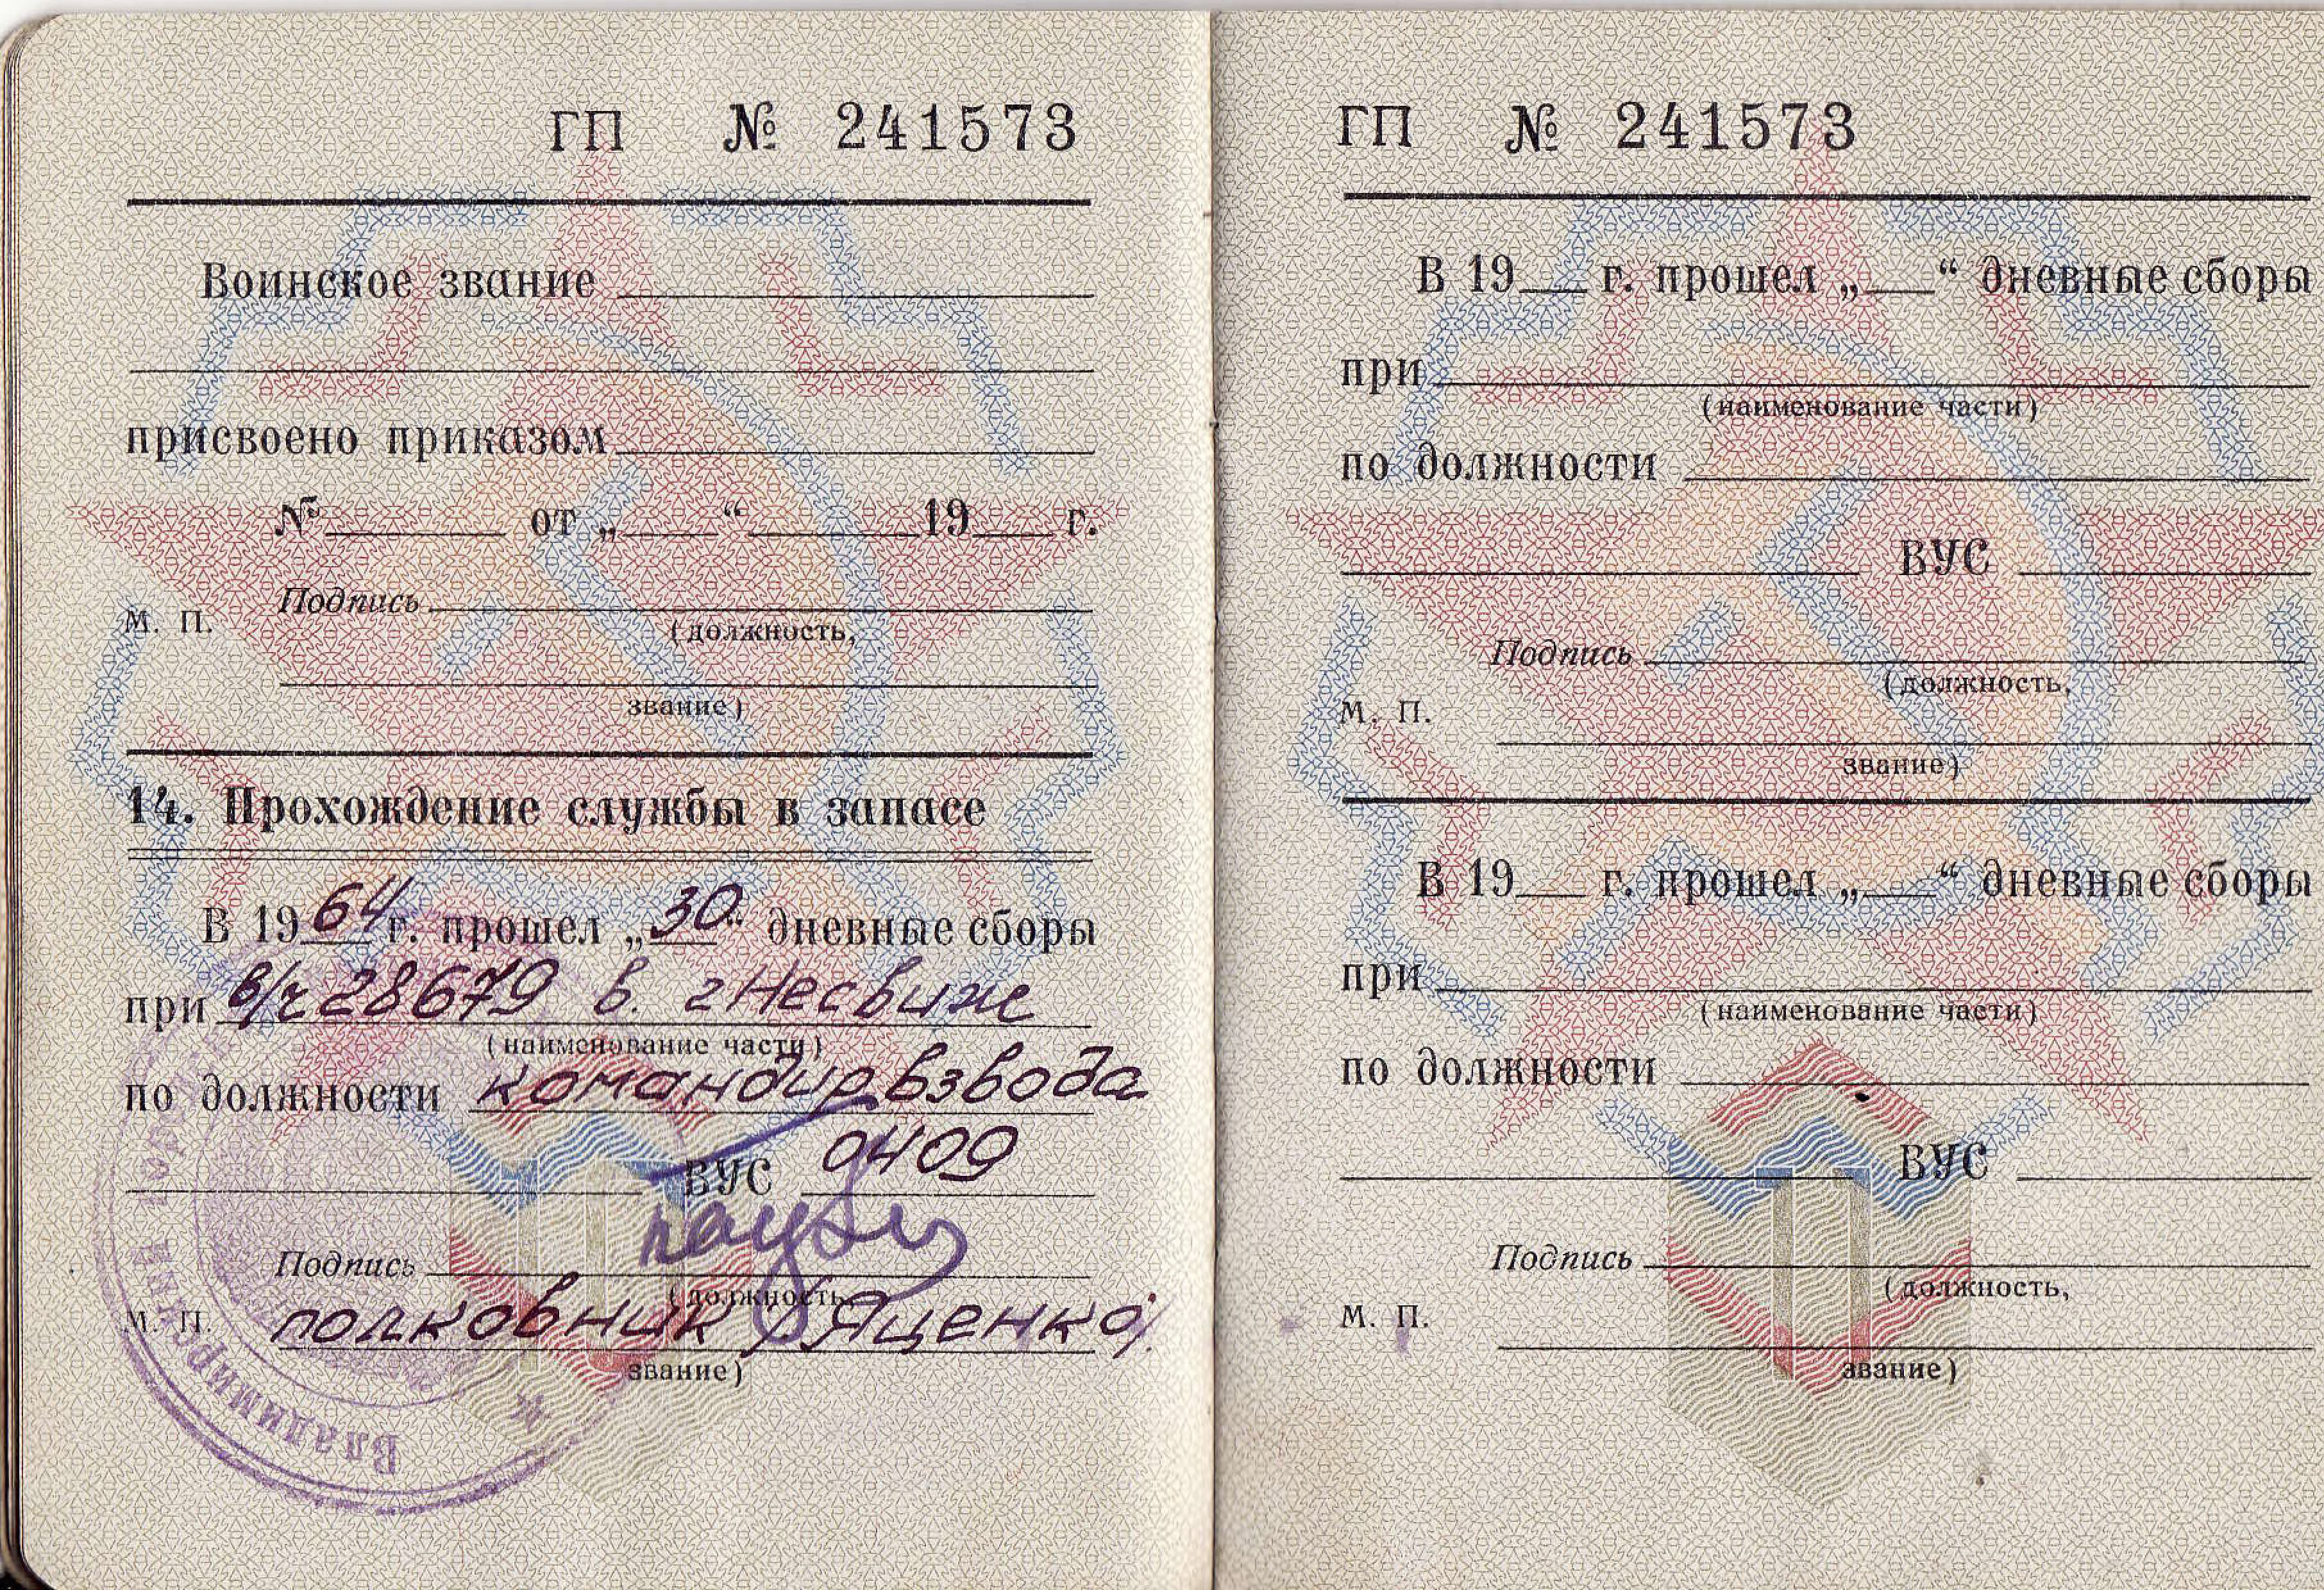 Военный билет офицера запаса Вооруженных сил СССР